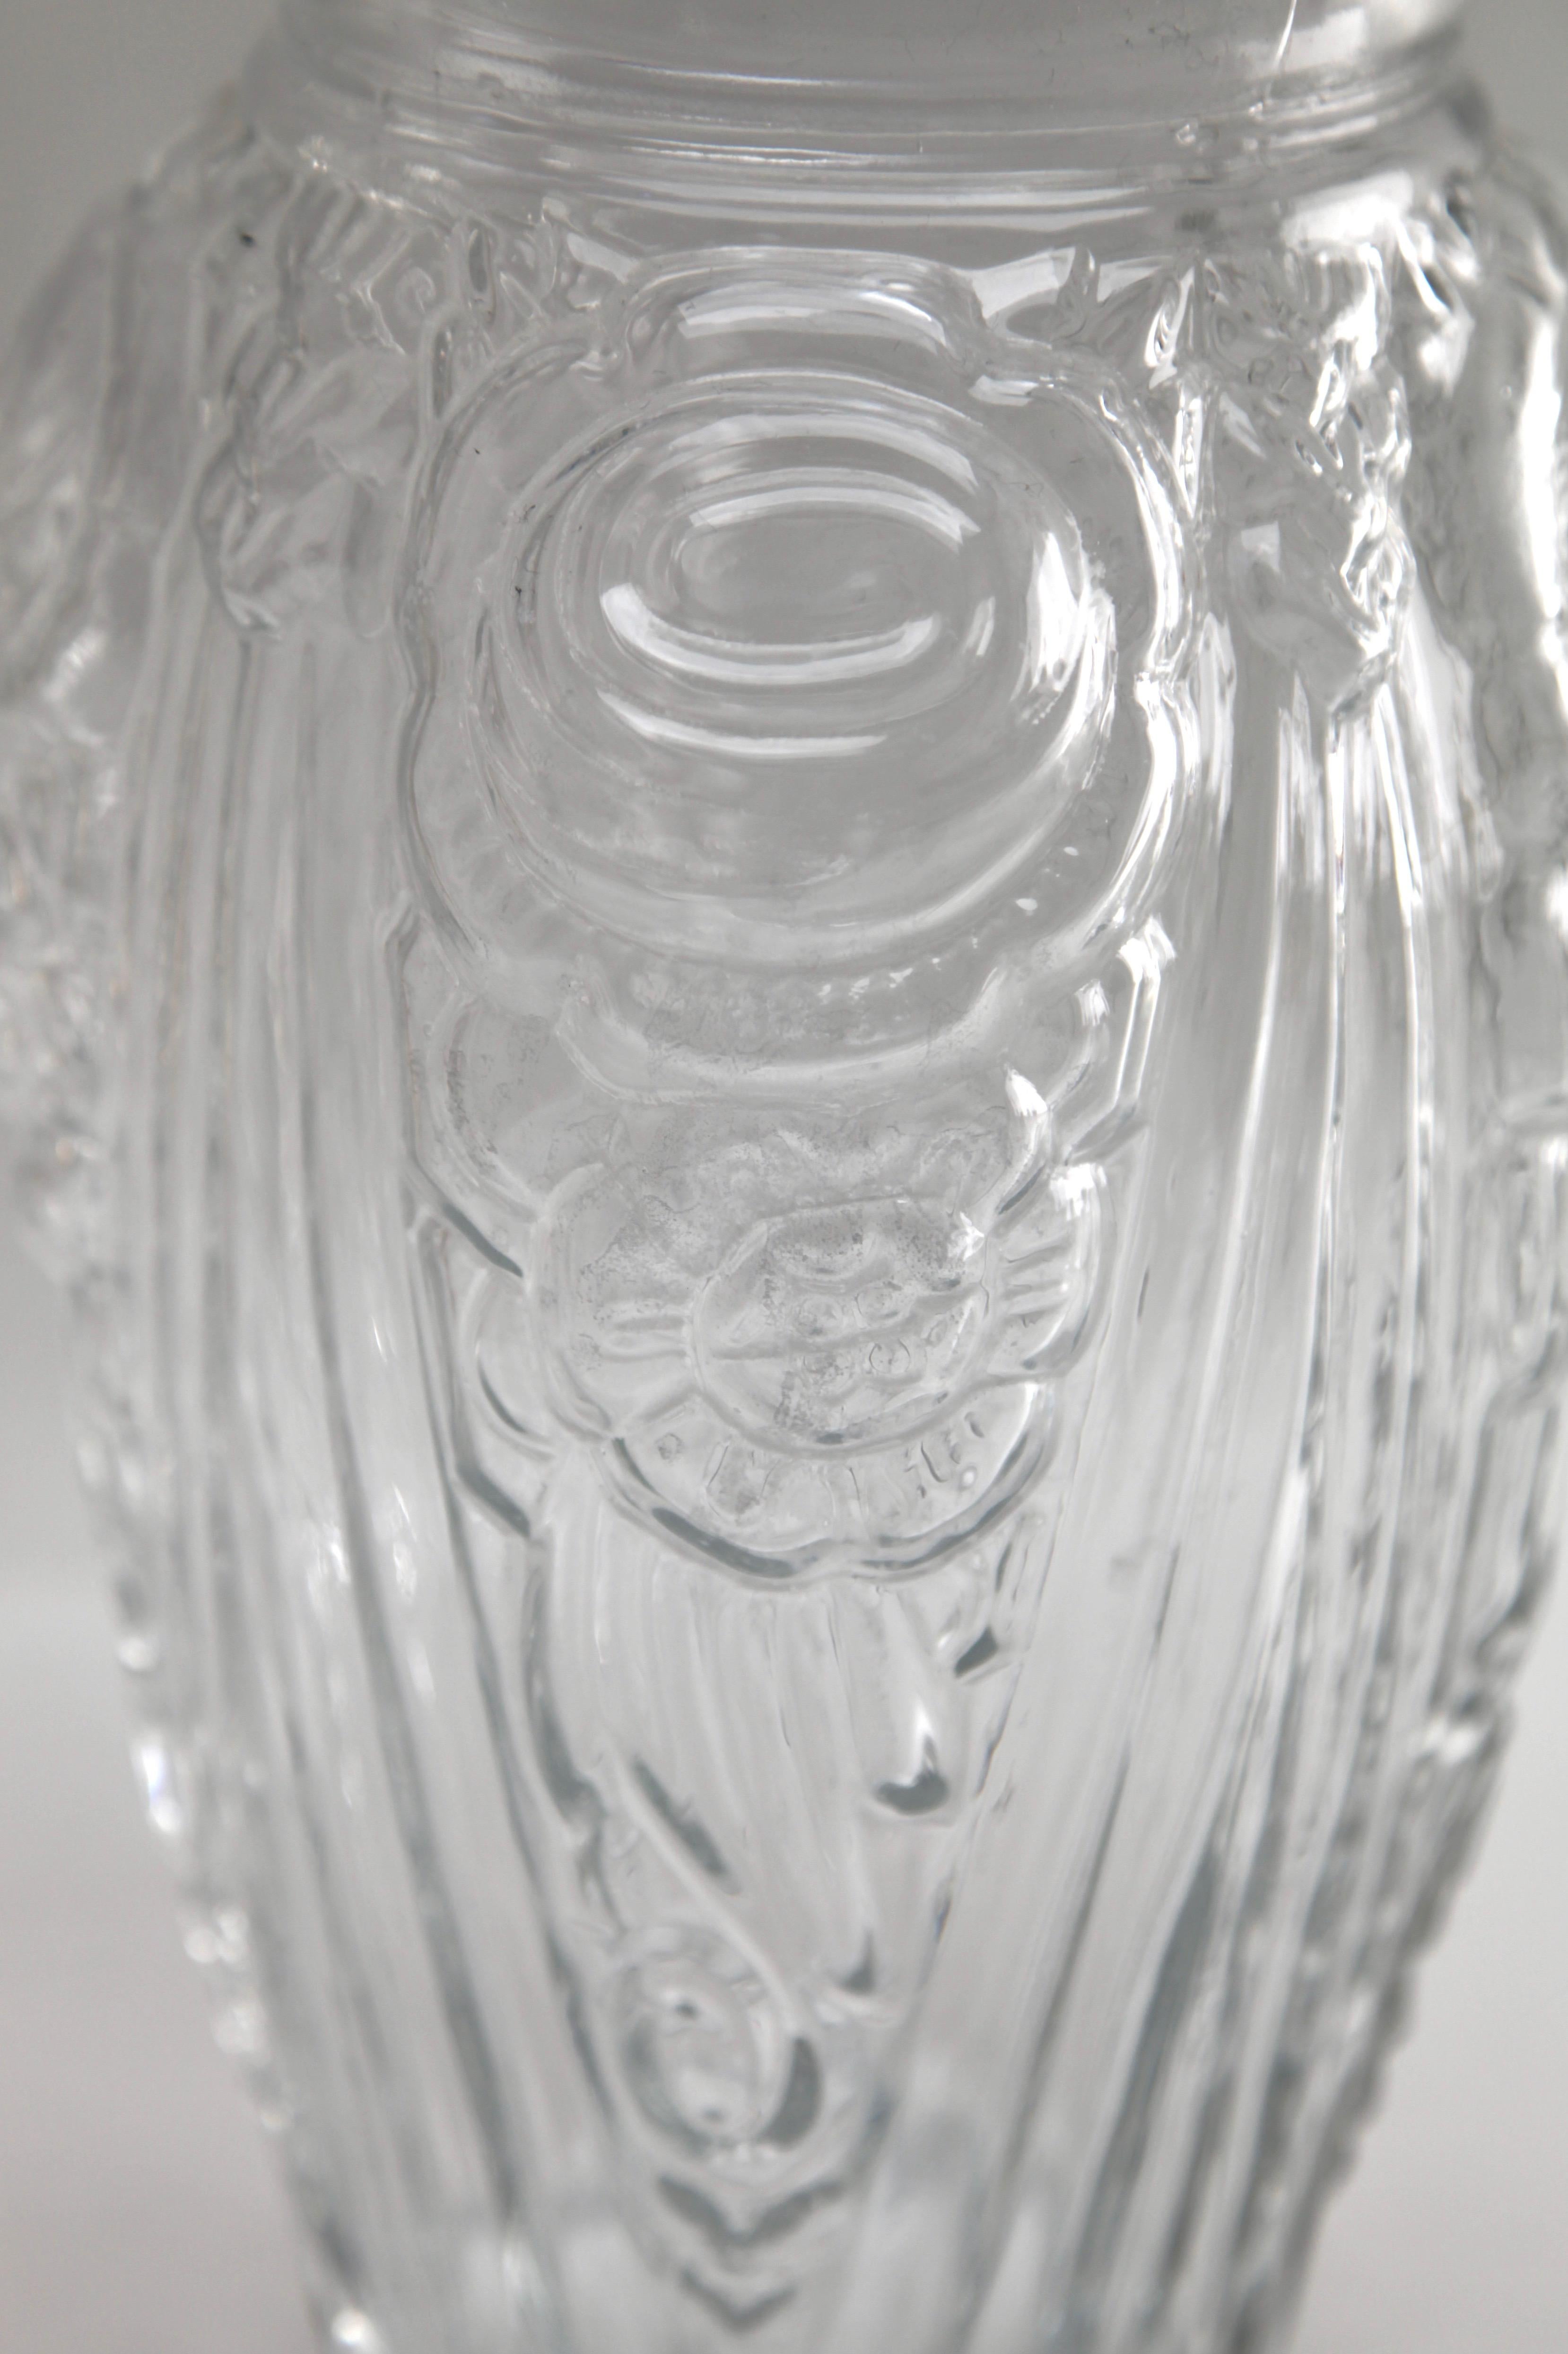 Imposante Vase aus blauem, mattiertem Pressglas im Art-Déco-Stil. Diese große Vase kontrastiert die Geometrie der Linien mit den runderen Formen der Blumen und stammt aus den frühen 1930er Jahren. Sie wurde in der wenig bekannten Fabrik von Neiman